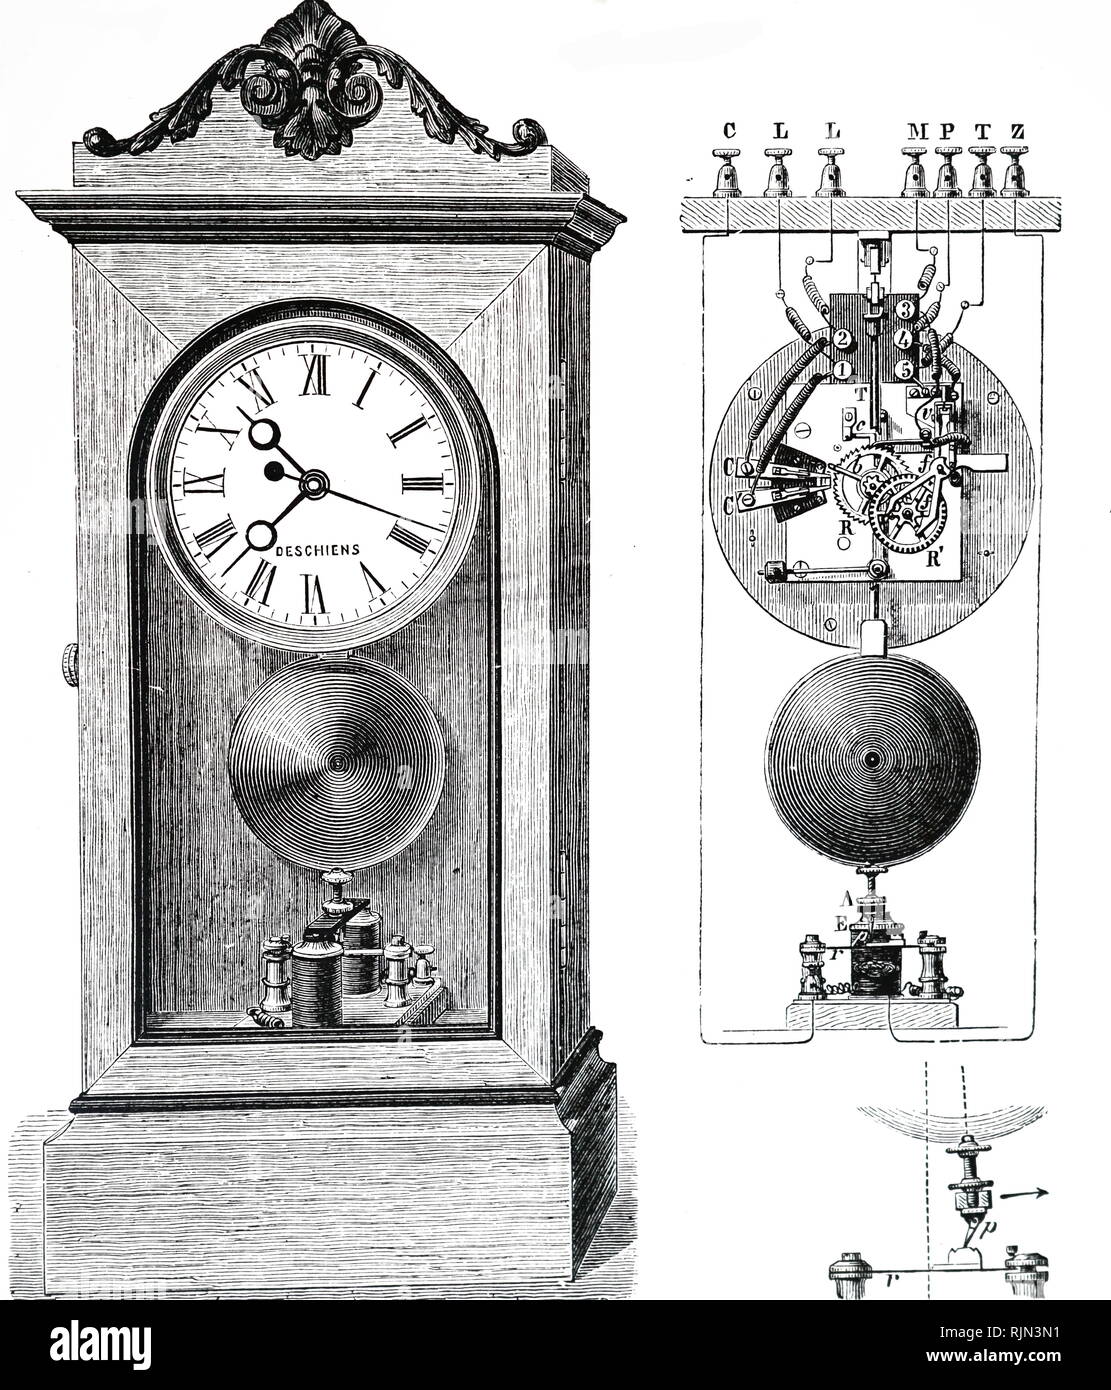 Abbildung: Elektrische Uhr von Hipp von Neuchatel, aus Amdee Guillemin "Elektrizität und Magnetismus", London, 1891. Stockfoto